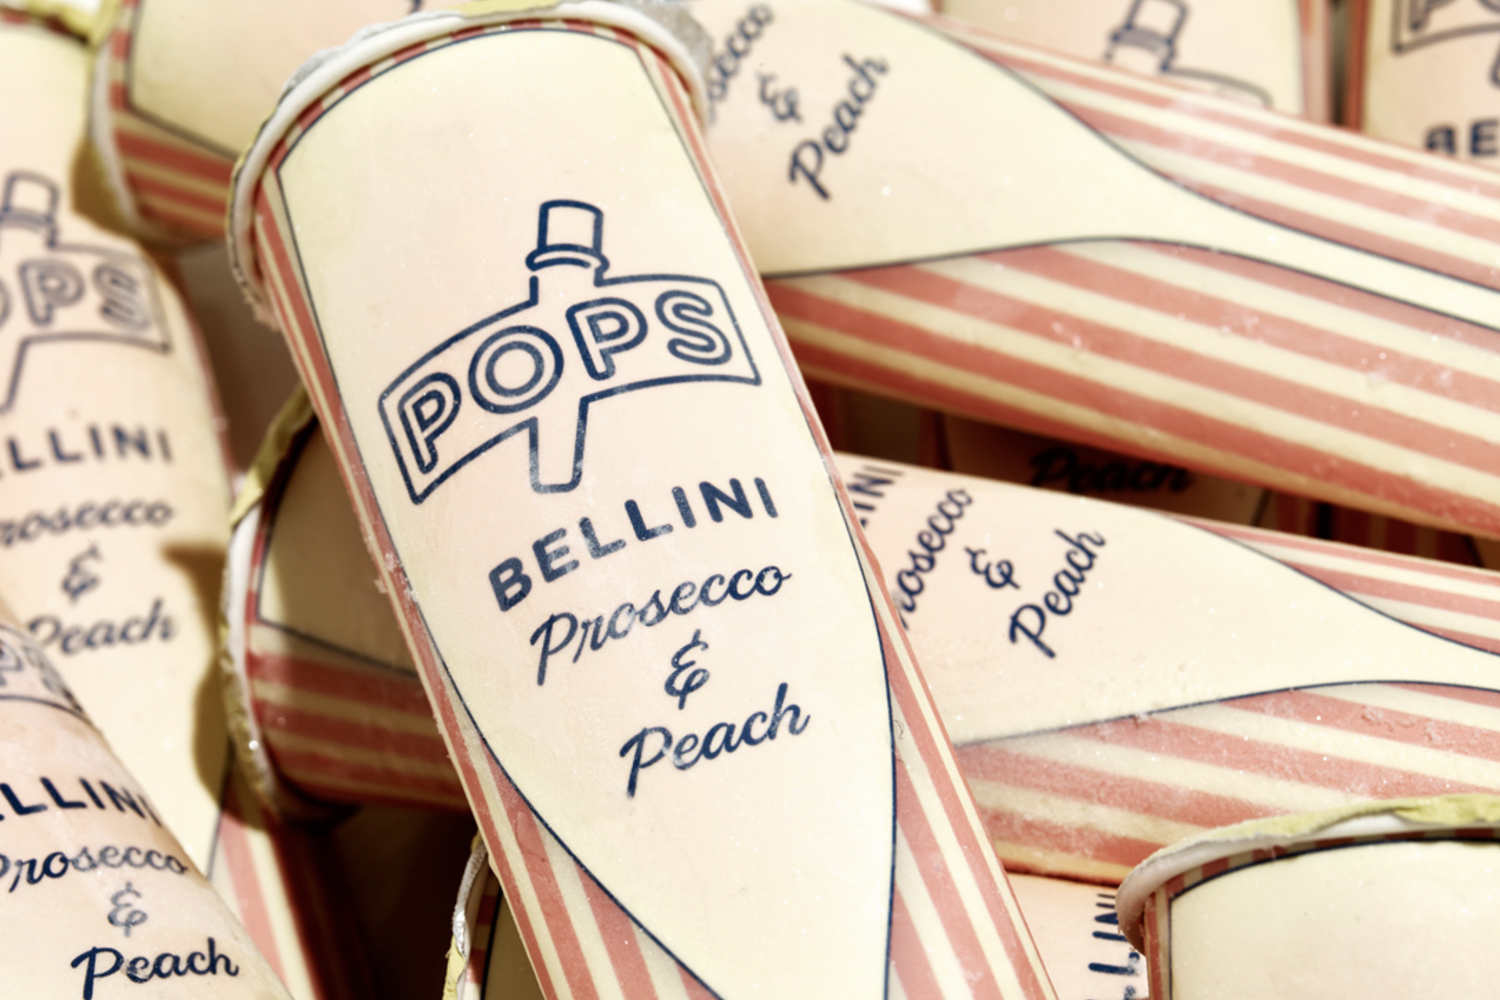 POPS. Amazing alcoholic premium ice popsicles